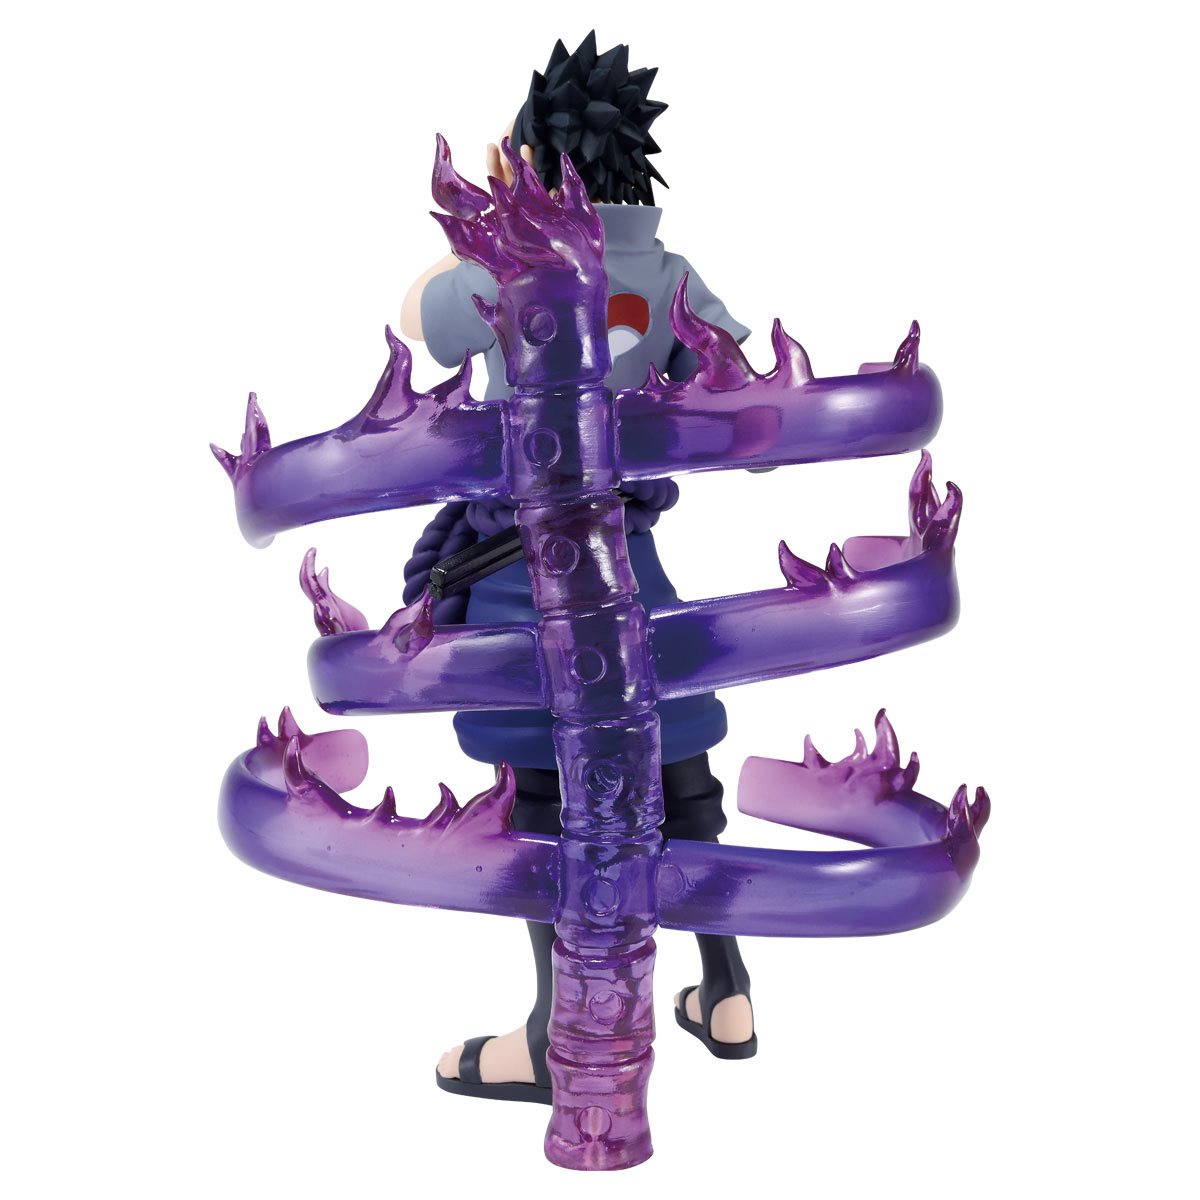 hyper detailed ultra sharp full length of Sasuke - Playground